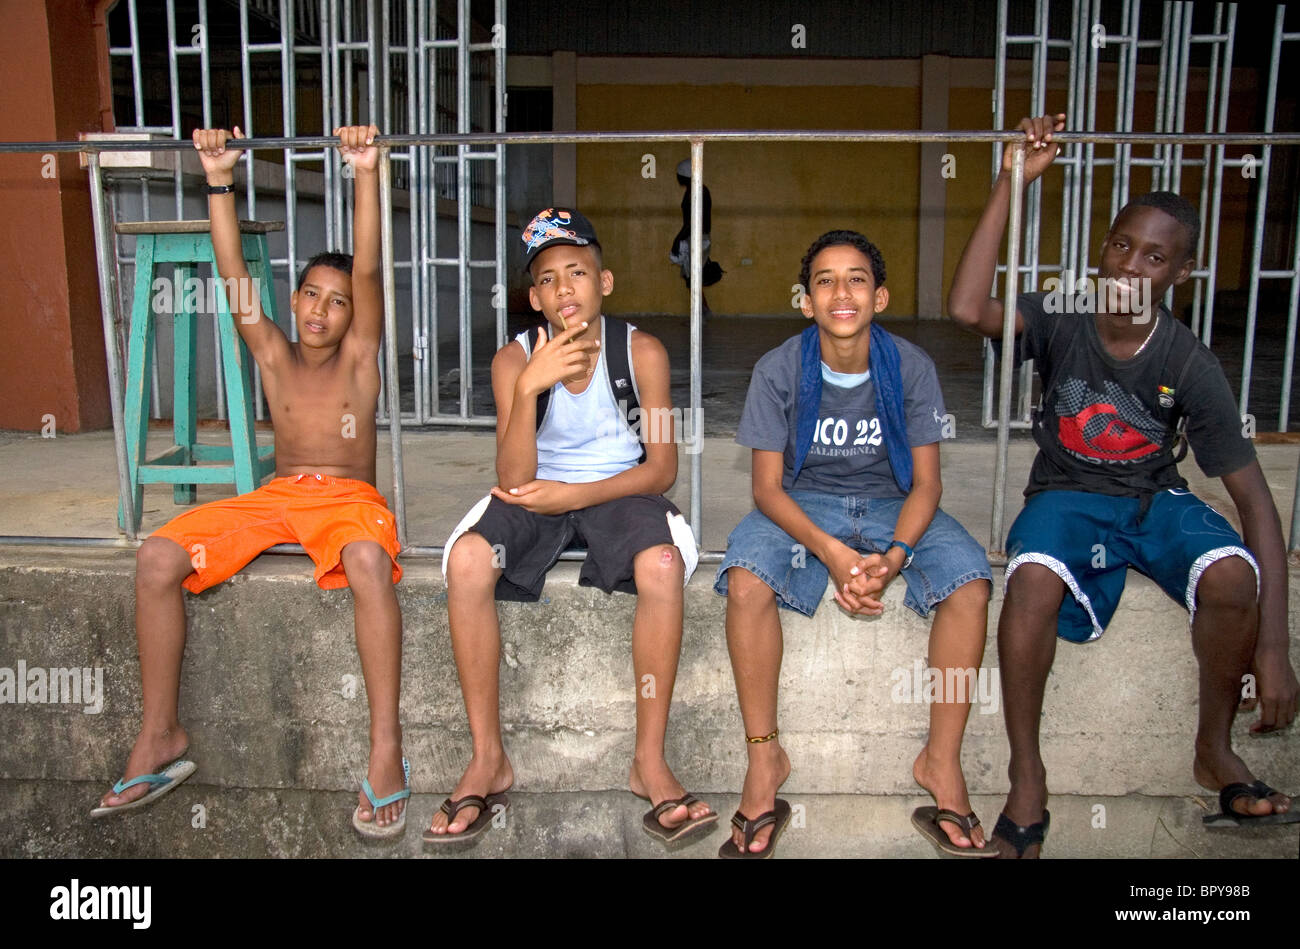 Costa Rica Jugendliche in Puerto Limon, Costa Rica. Stockfoto